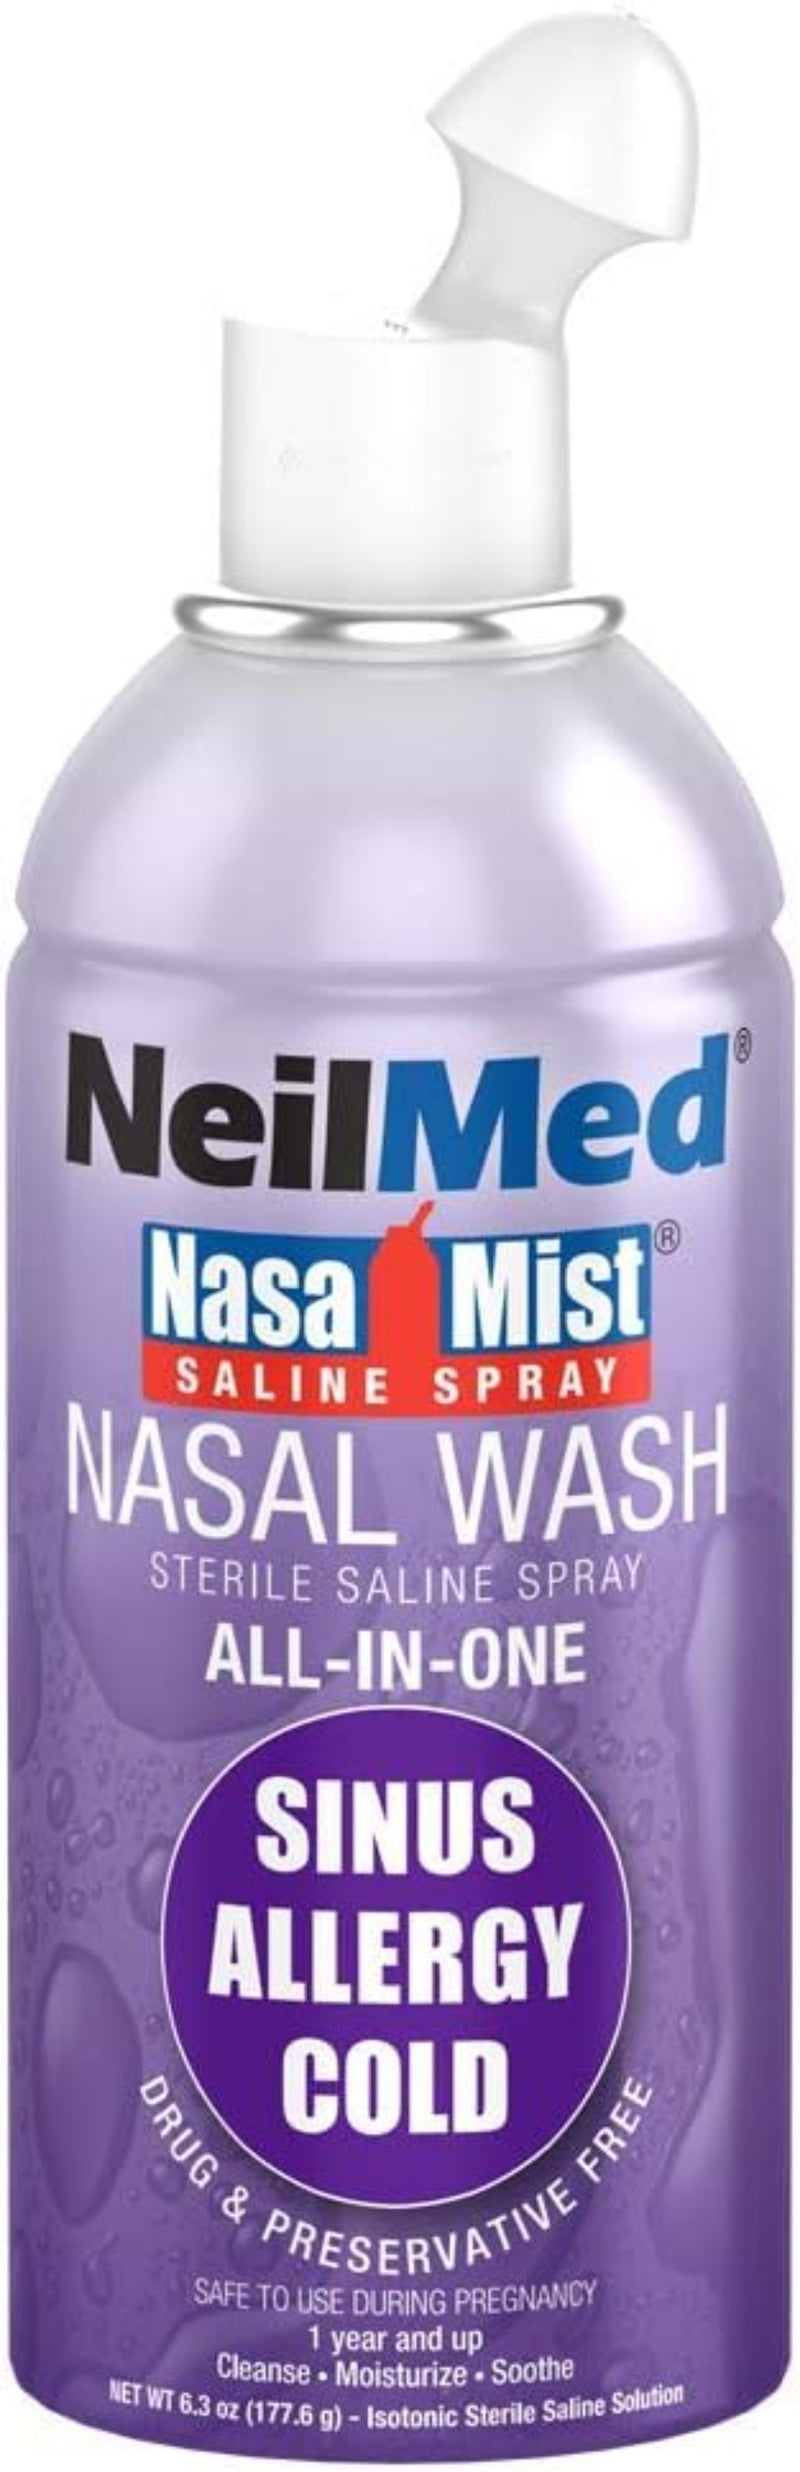 NeilMed NasaMist Spray All-in-One 177ml